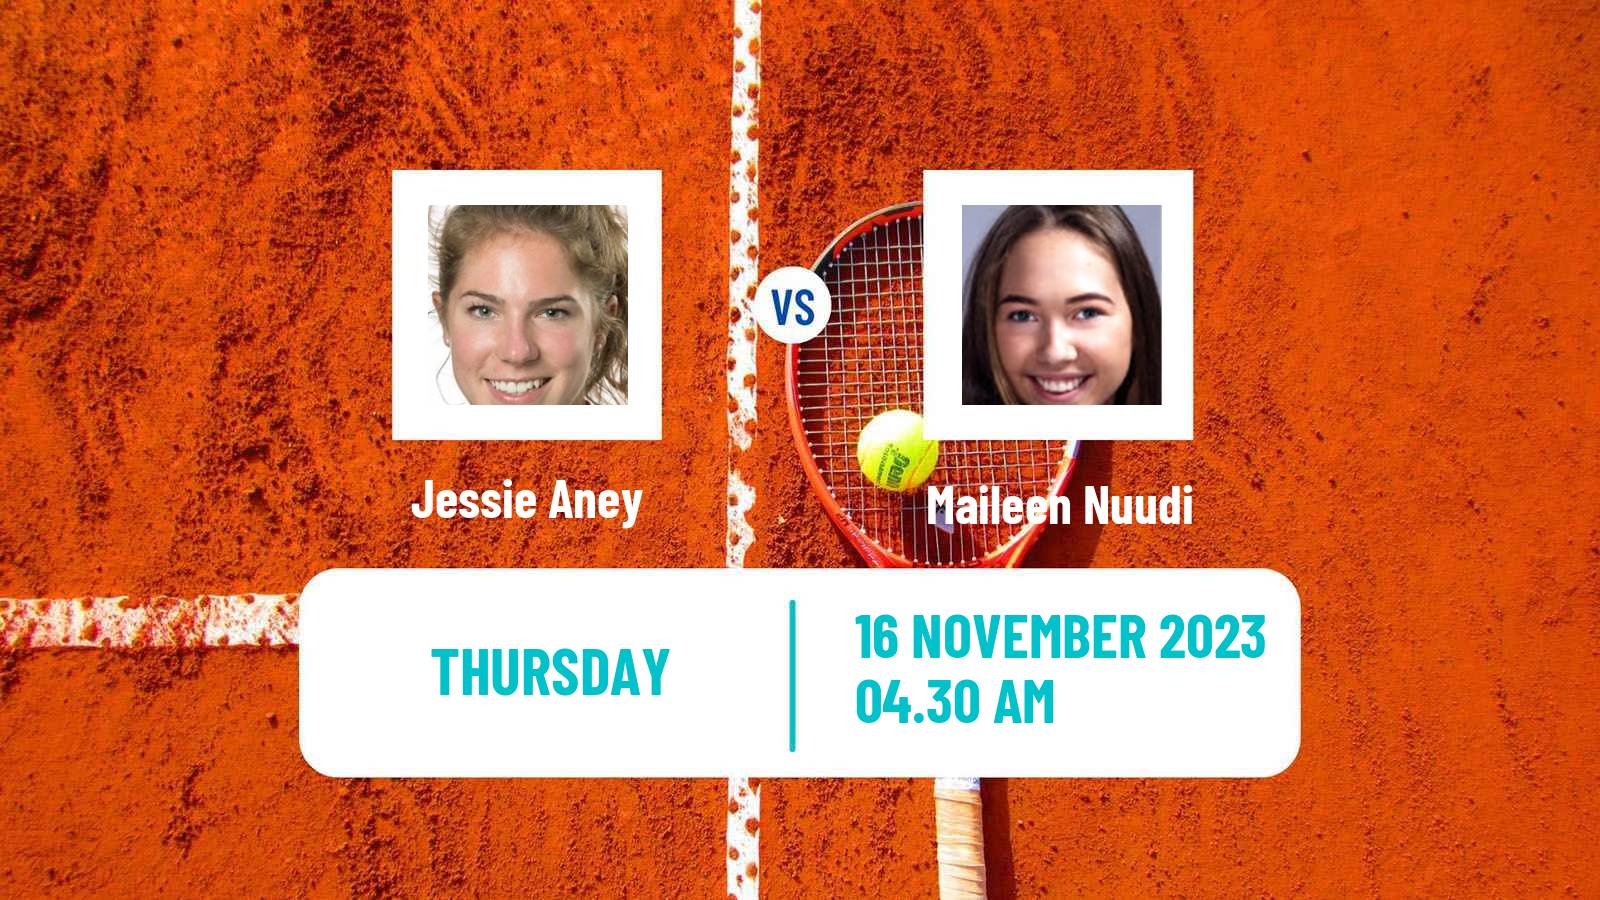 Tennis ITF W25 Solarino 3 Women Jessie Aney - Maileen Nuudi